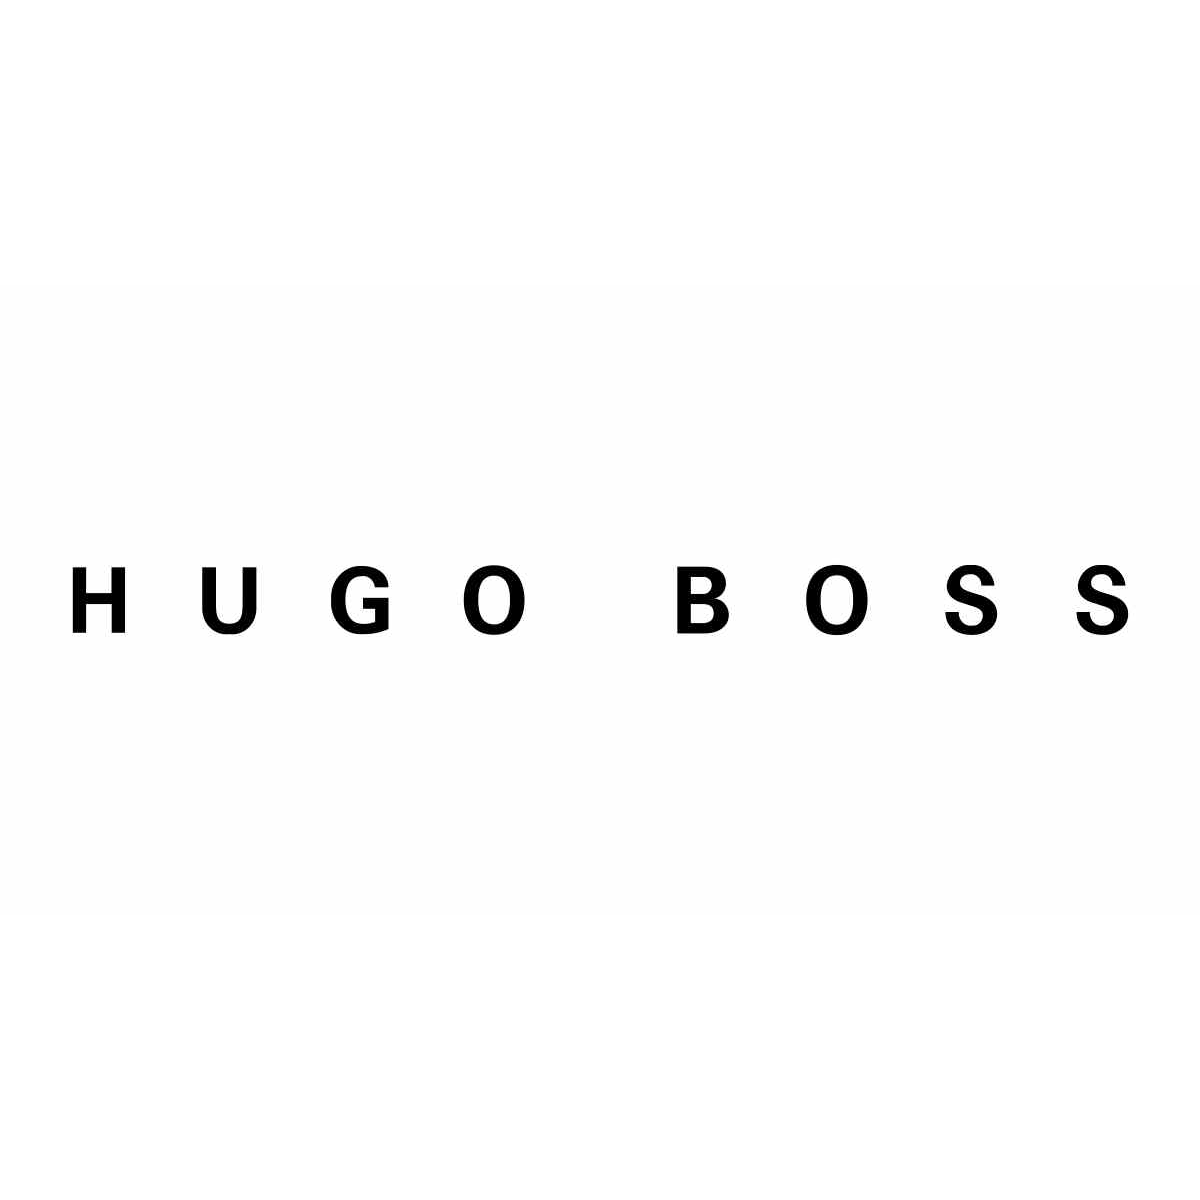 Hugo Boss Schreibwaren